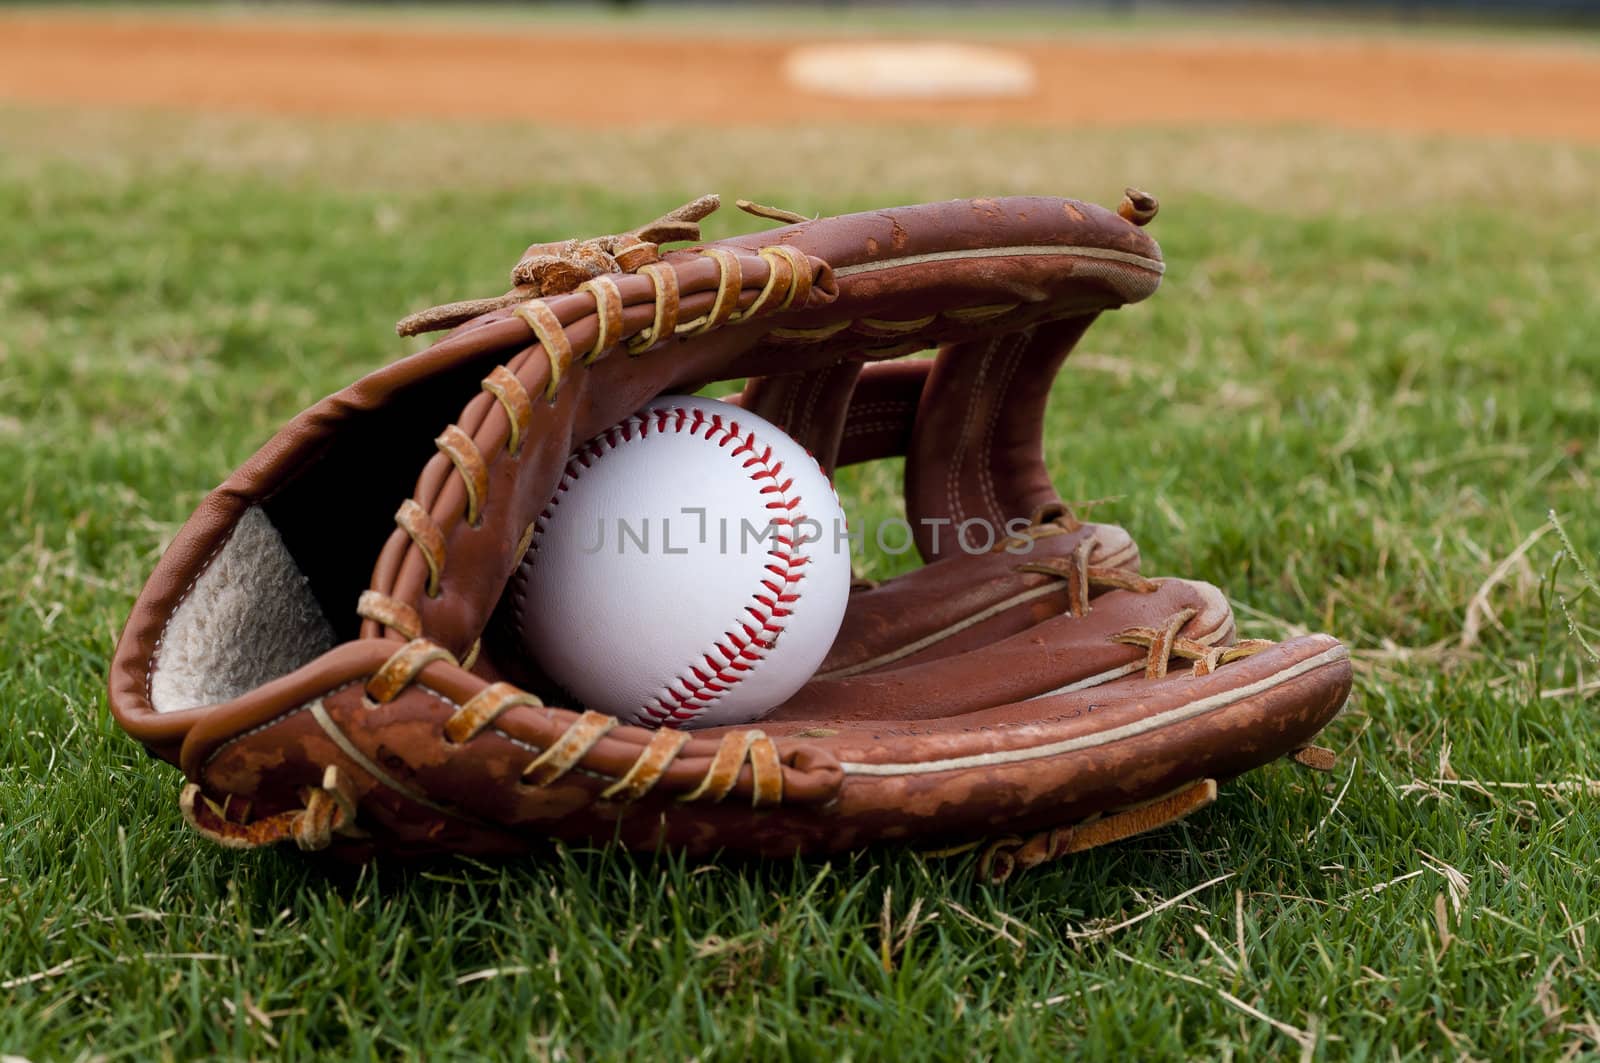 Baseball in Old Glove on Field by dehooks